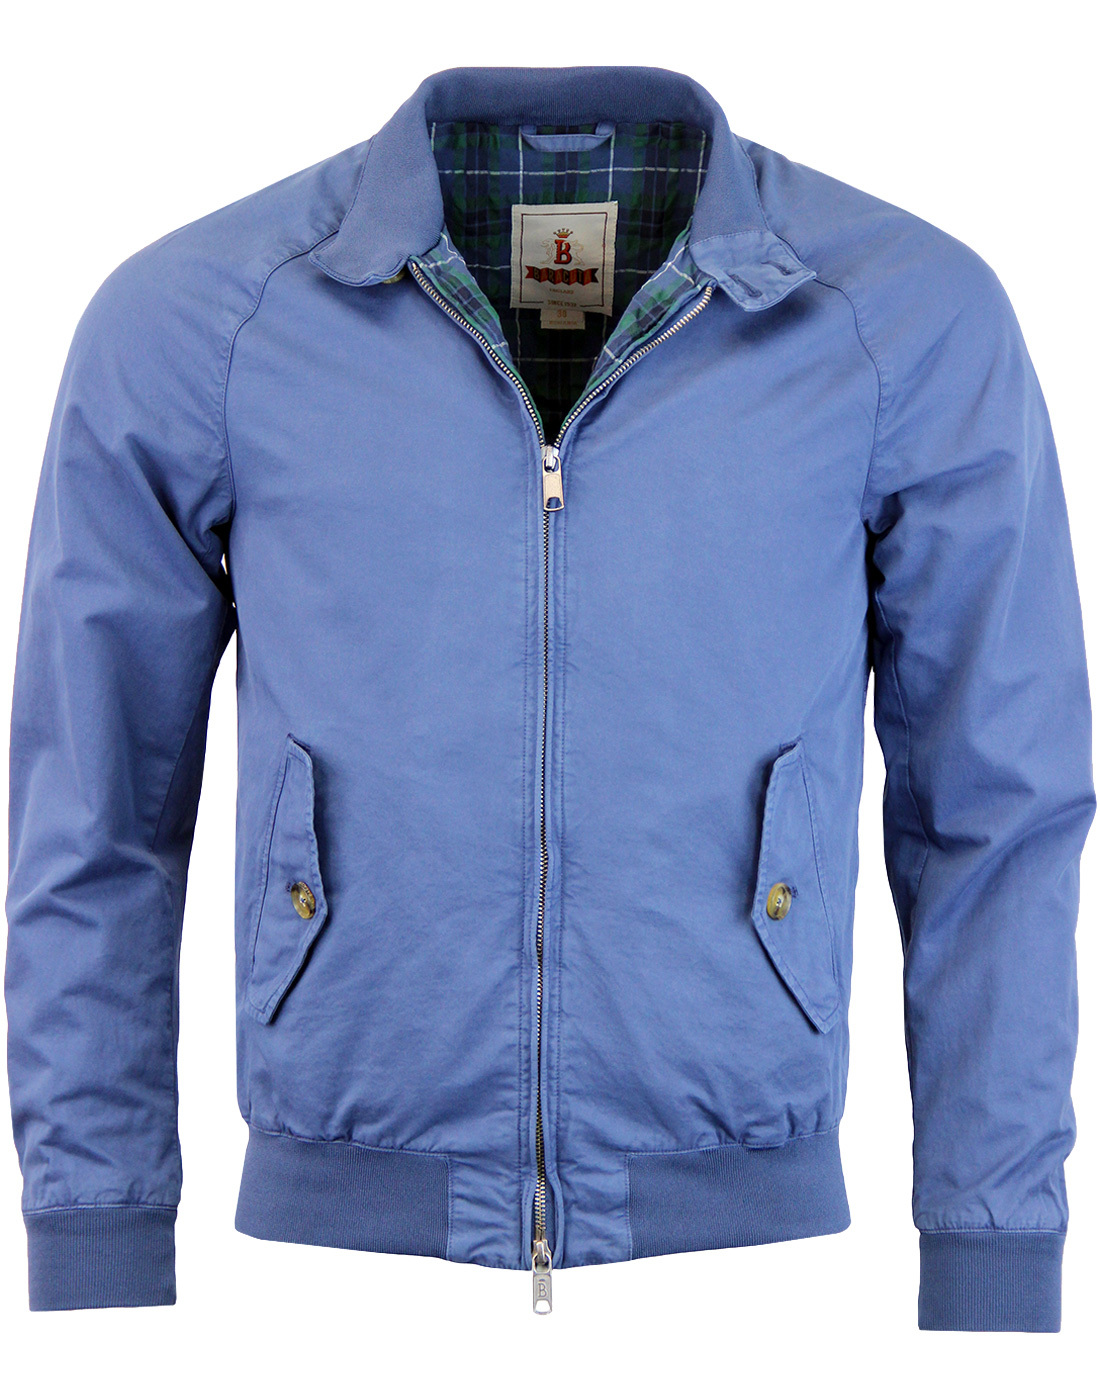 BARACUTA G9 Garment Dyed 60s Harrington Jacket A